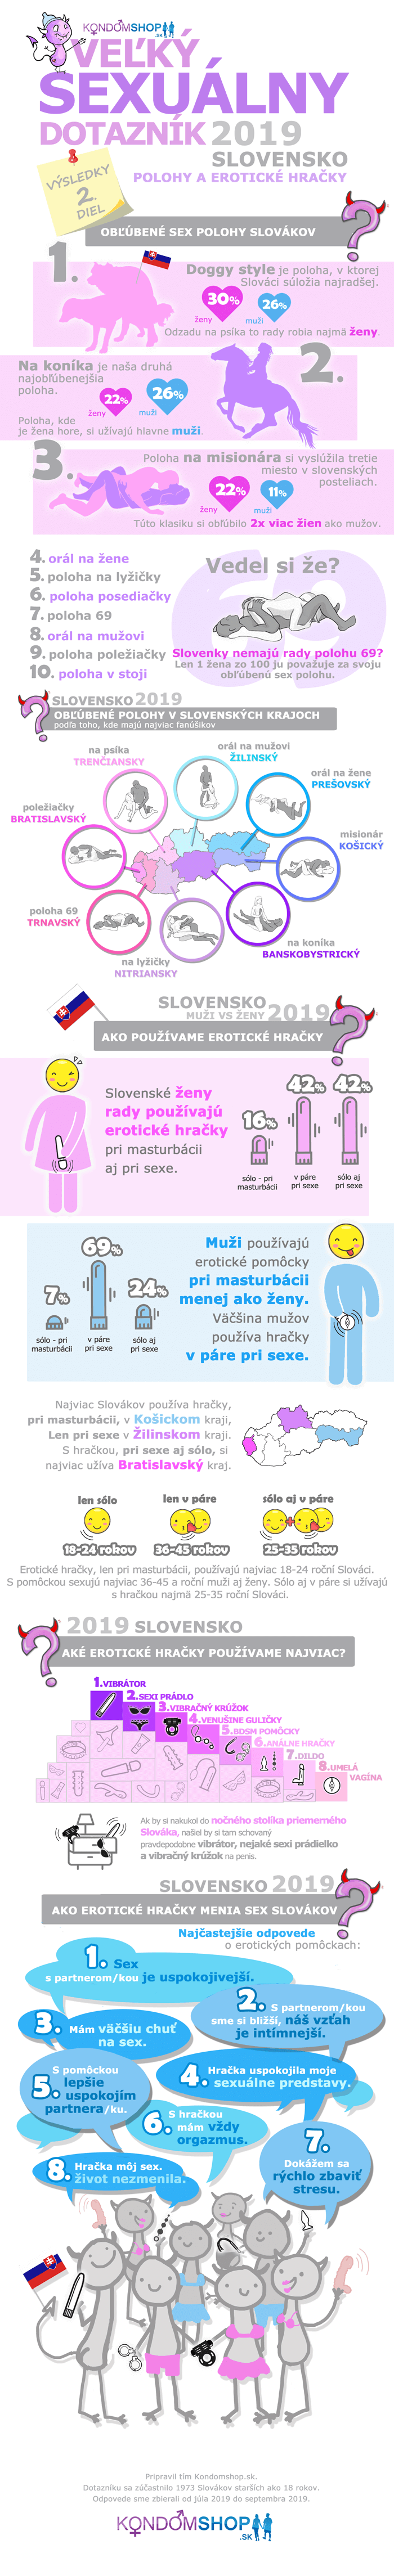 infografika 2. diel výsledkov sexuálneho prieskumu Slovákov